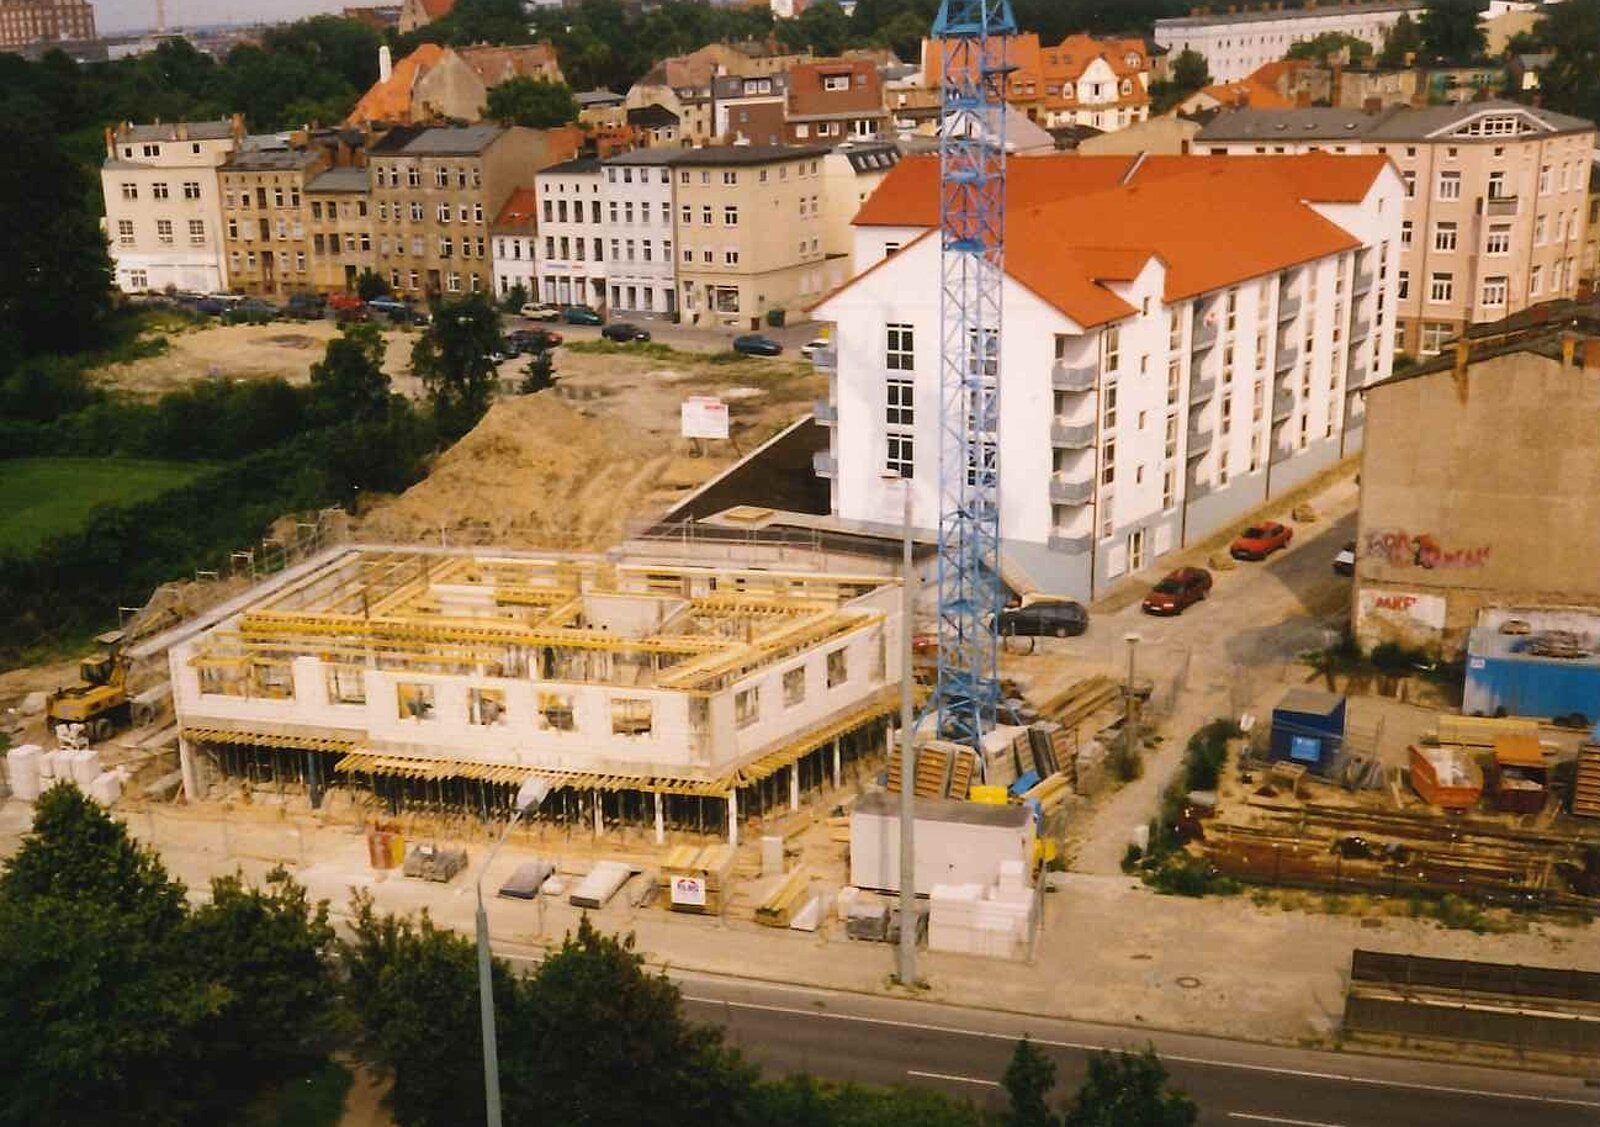 August 1998: Am Vögenteich 26